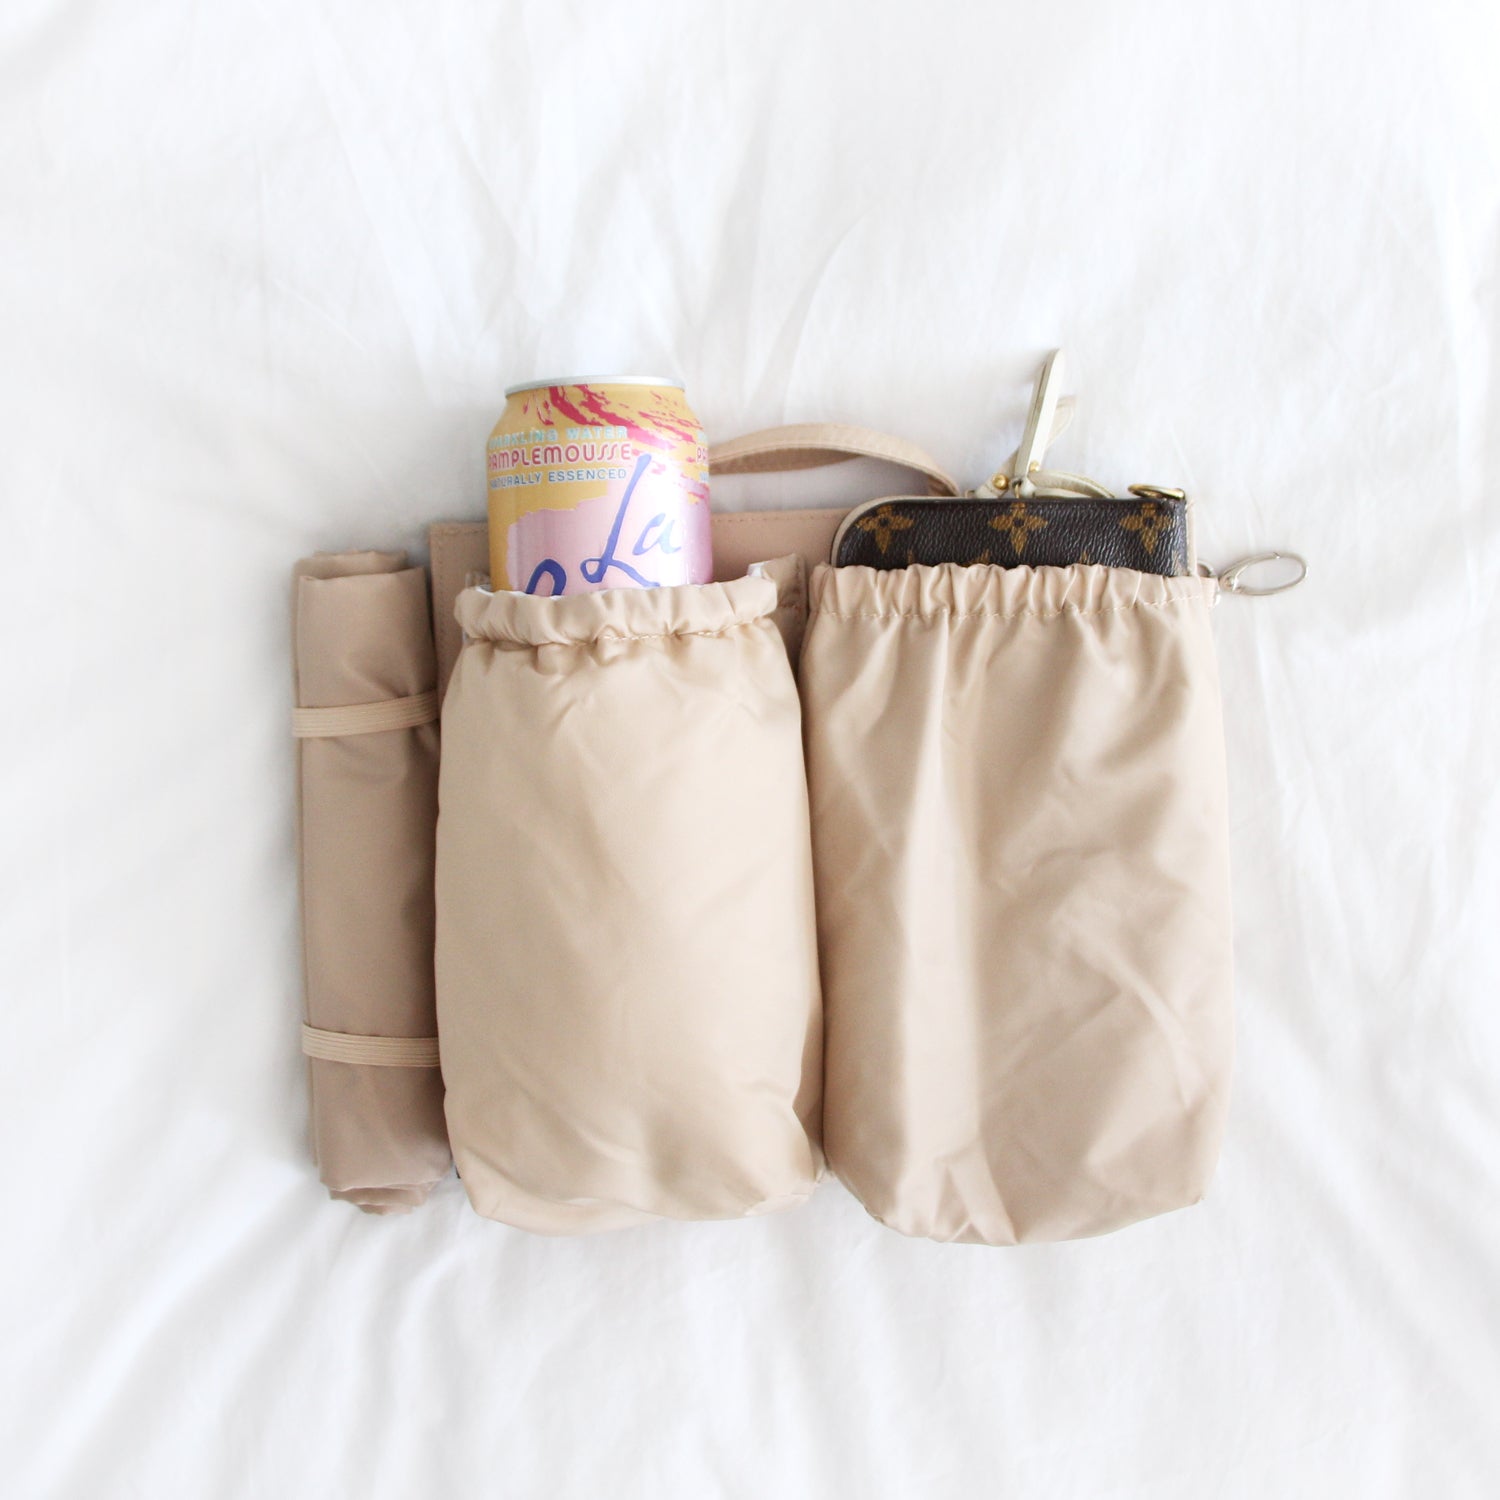 Make Any Bag a Diaper Bag with Tote Savvy — West Coast Capri